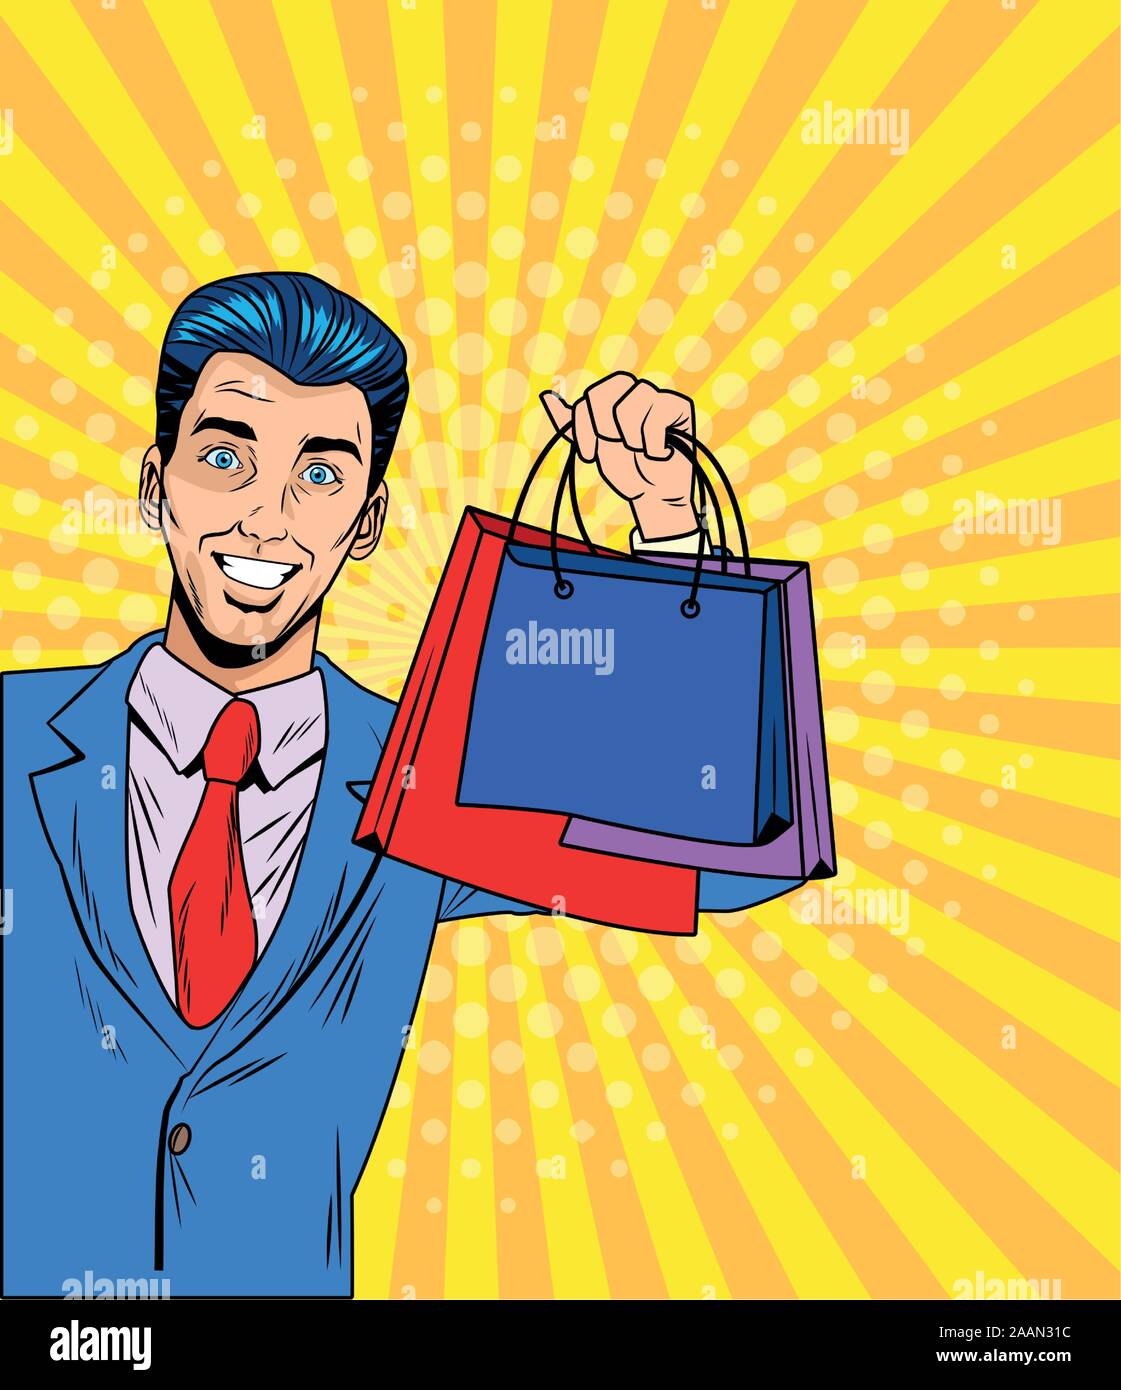 Man with shopping bag retro vector design Stock Vector Image & Art - Alamy